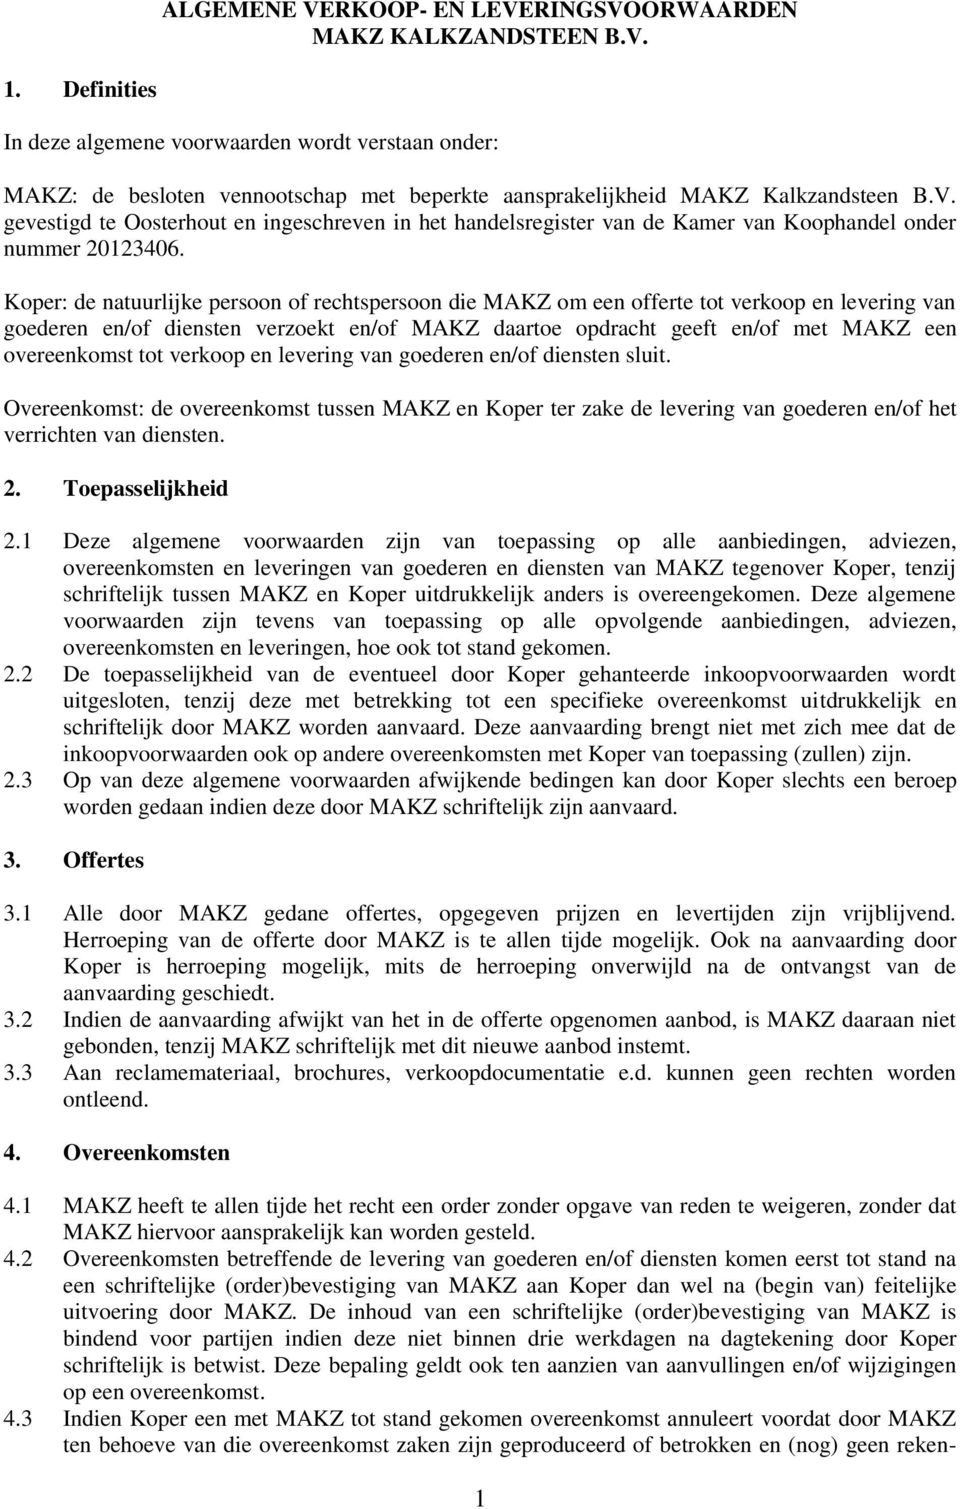 gevestigd te Oosterhout en ingeschreven in het handelsregister van de Kamer van Koophandel onder nummer 20123406.